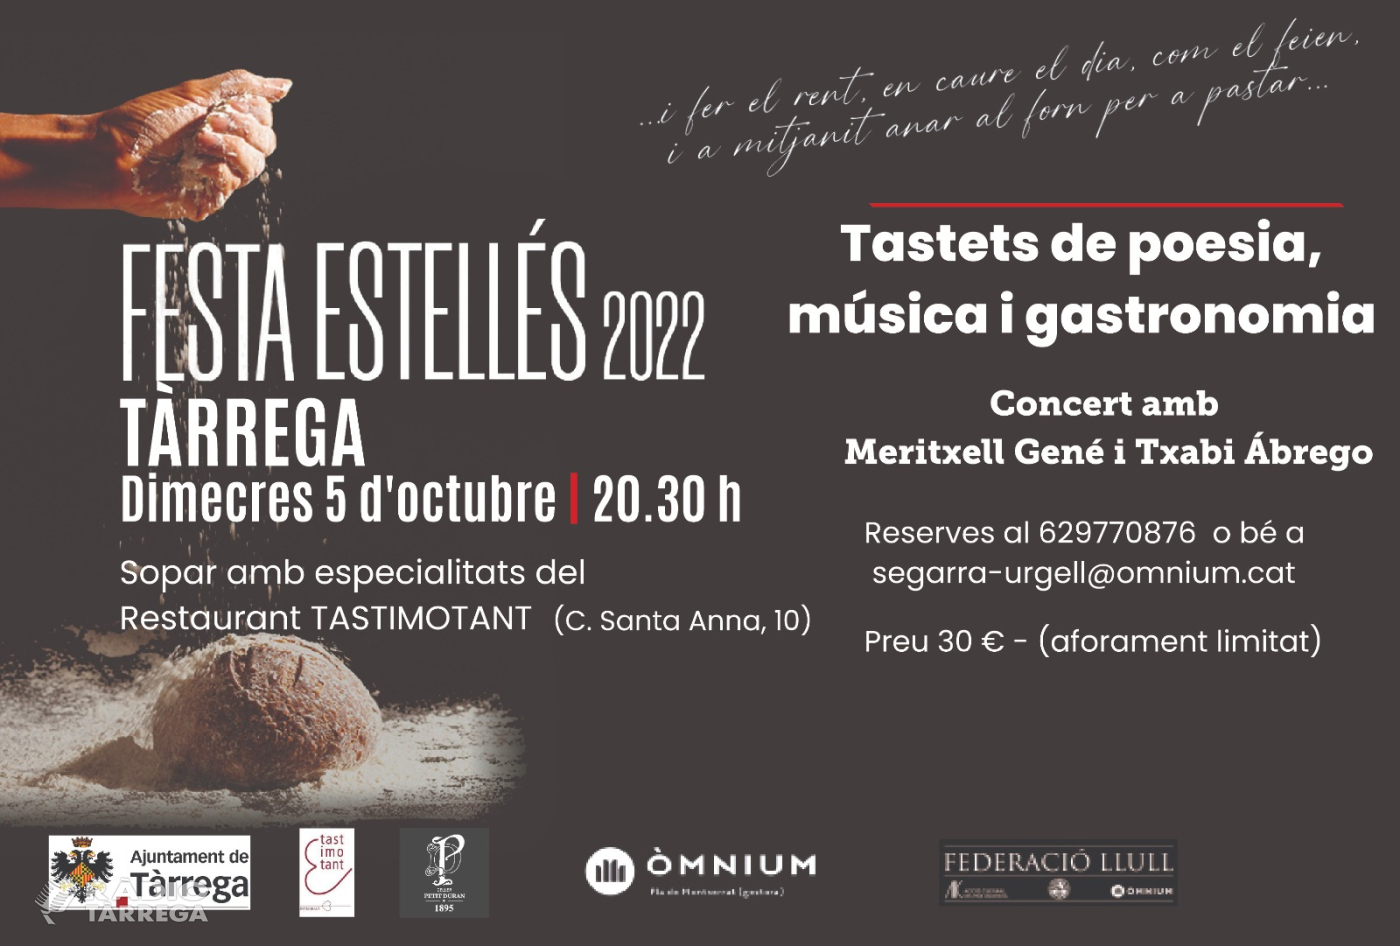 Òmnium Segarra-Urgell organitza la segona edició de la festa Estellés amb la participació de Meritxell Gené